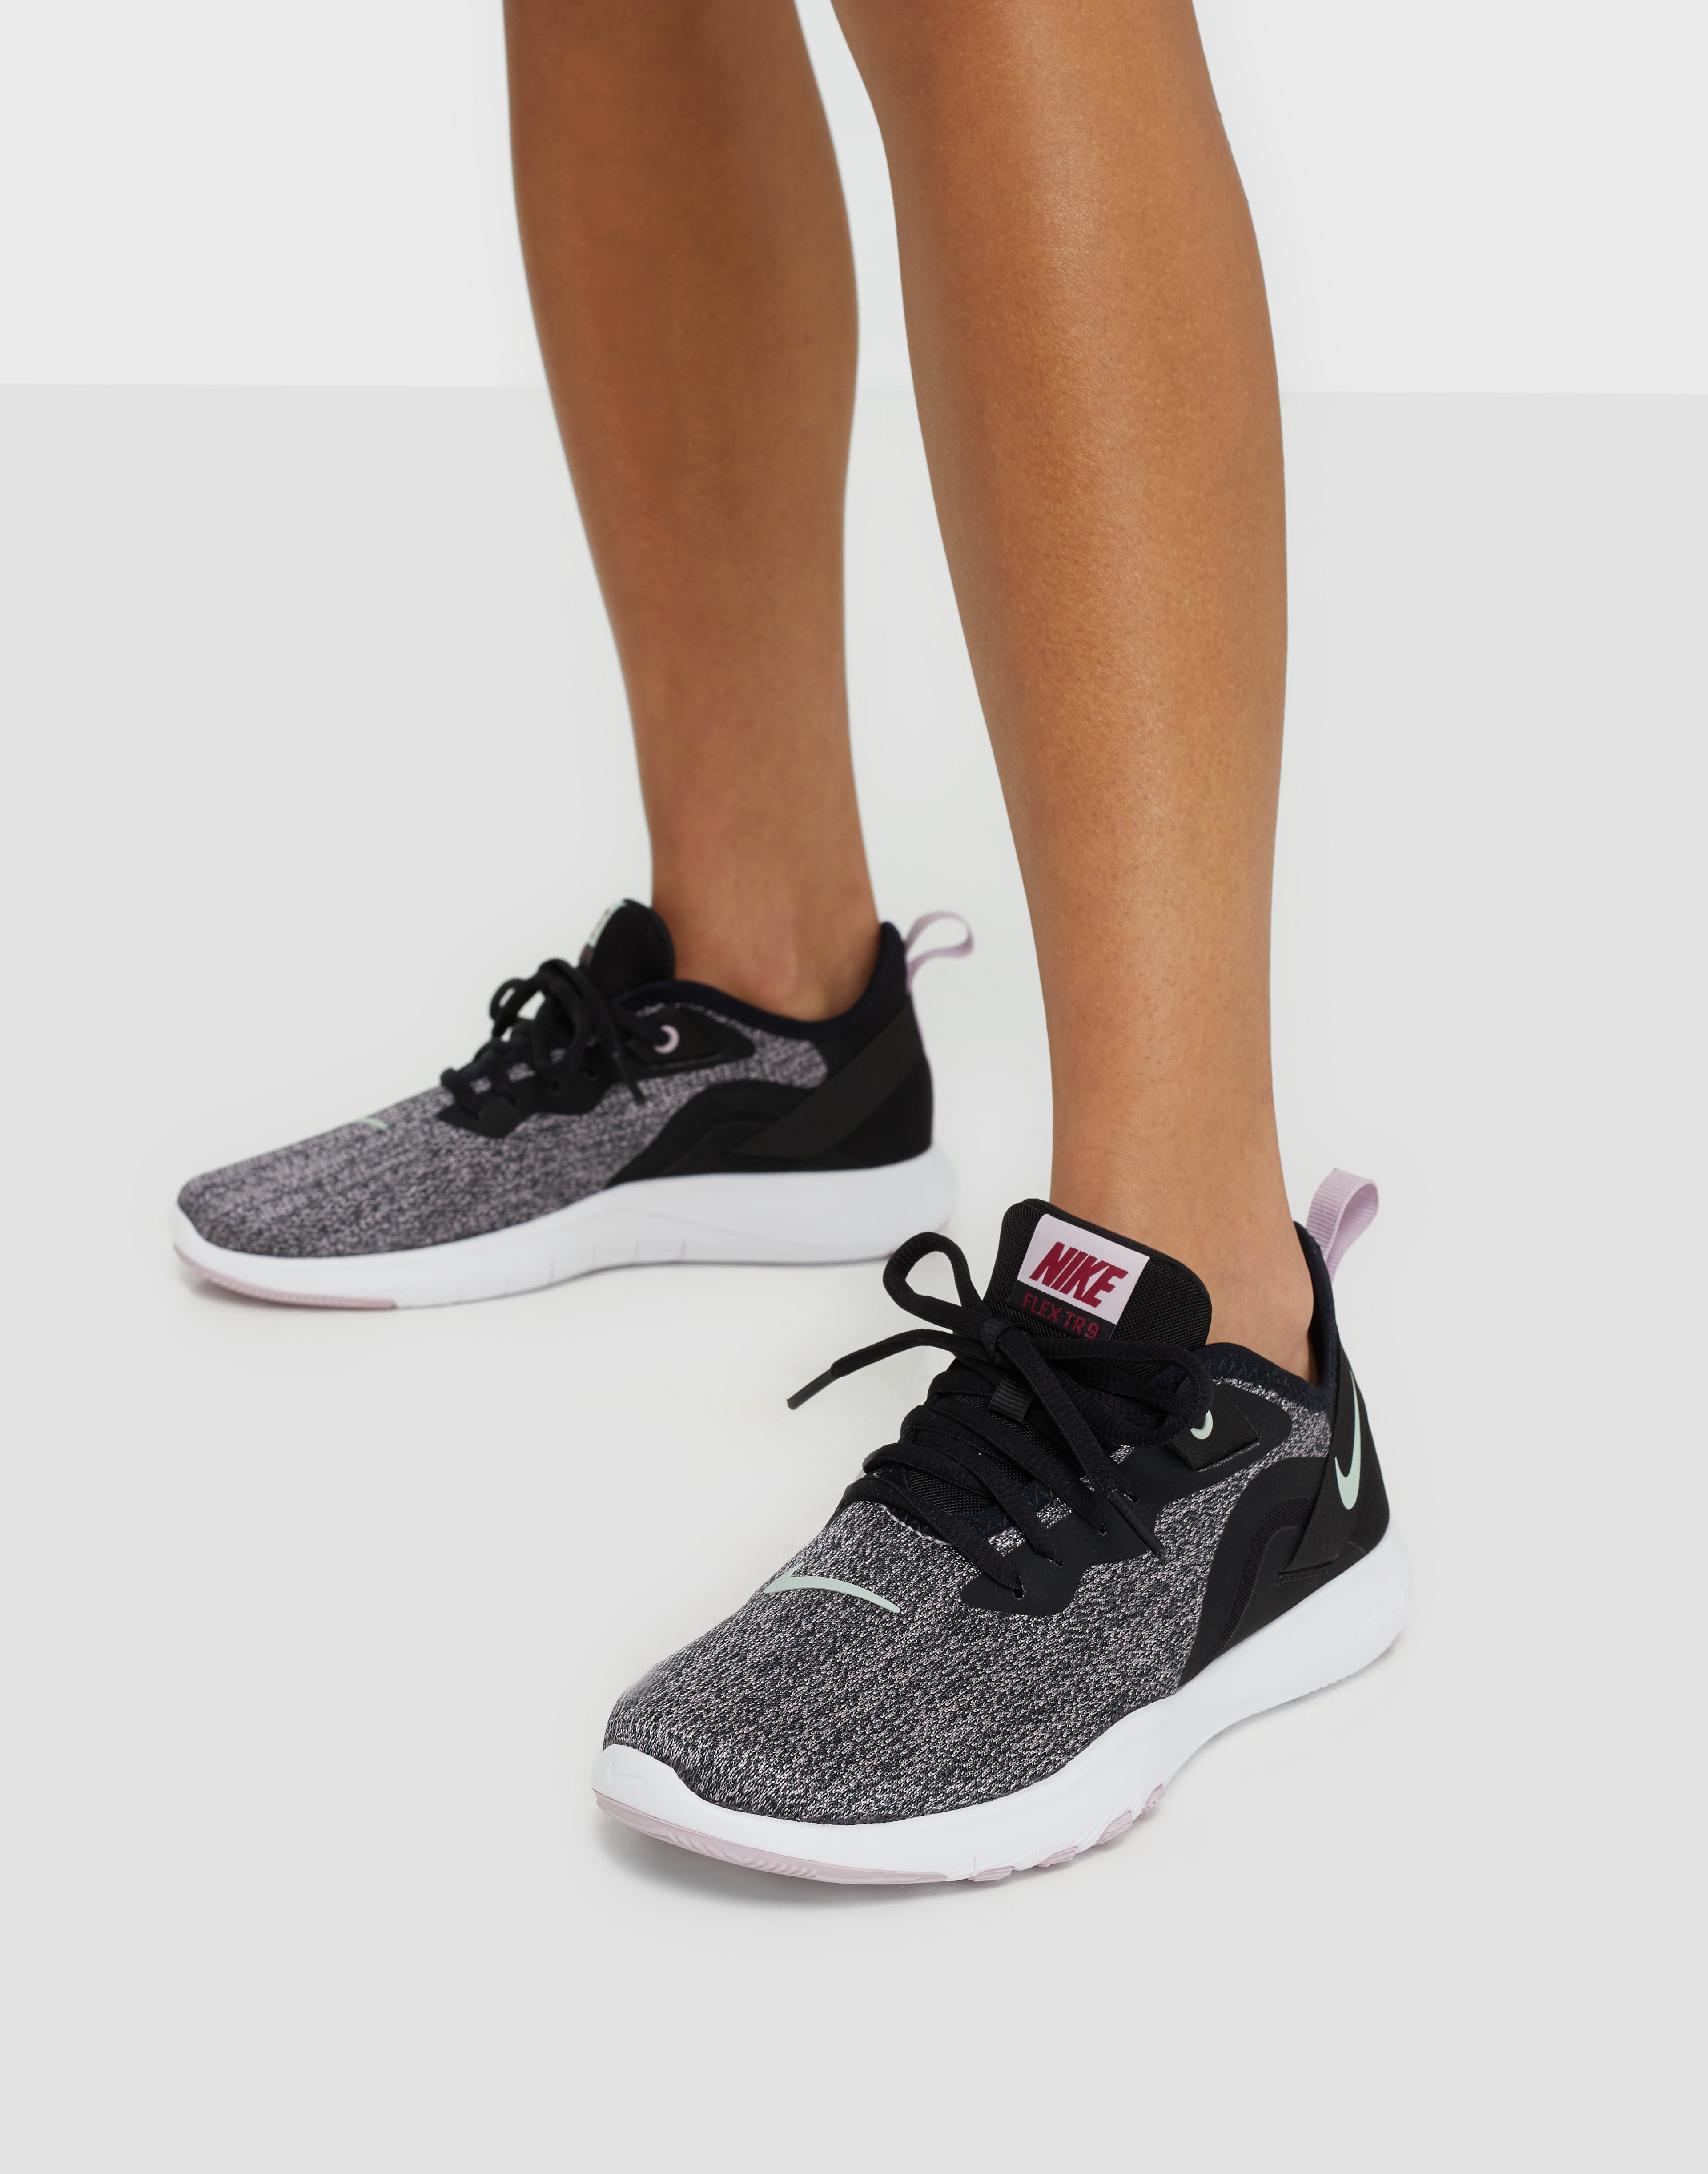 adidas alphabounce beyond women's running shoes